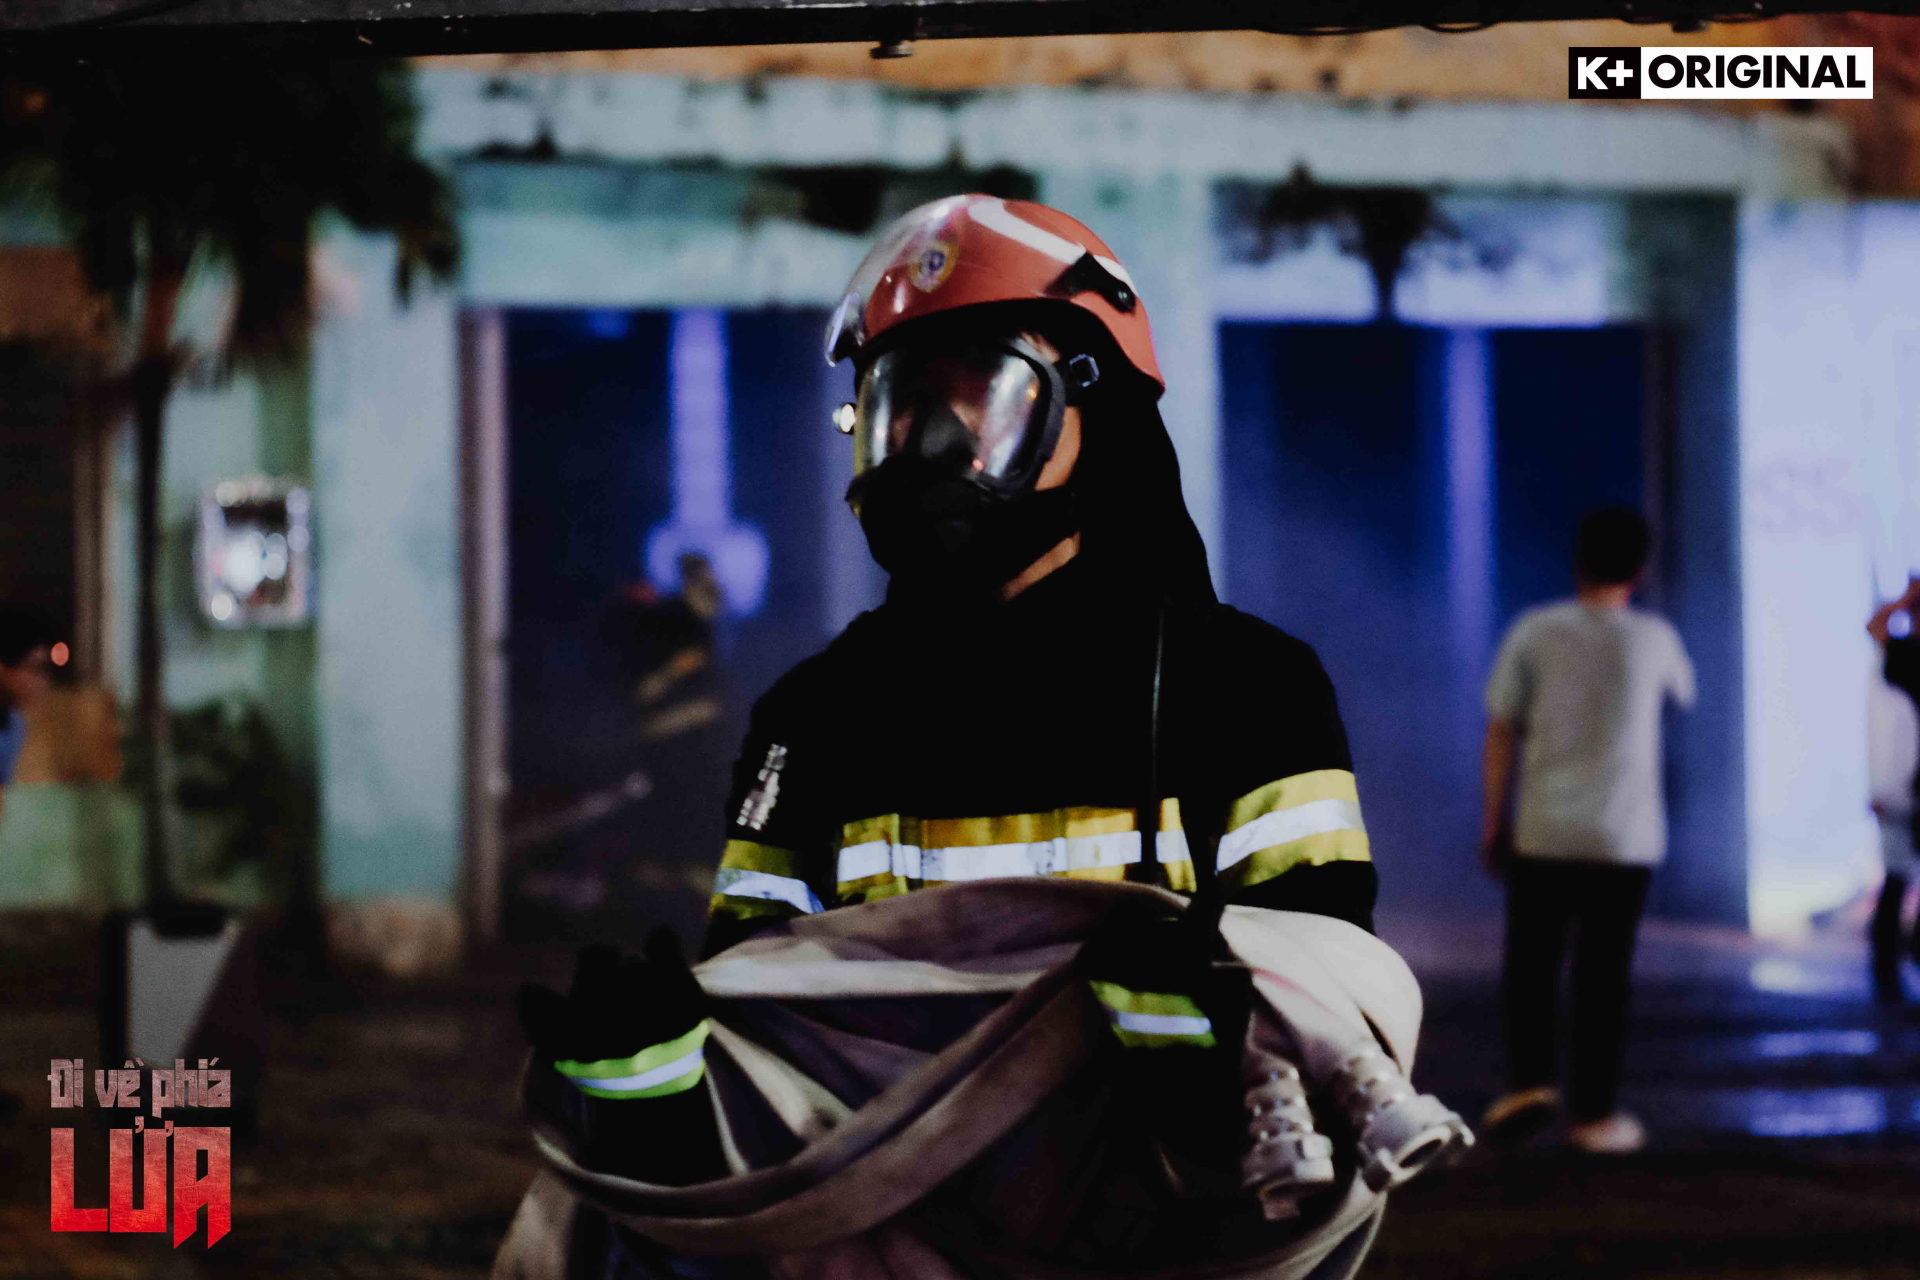 Xuân Phúc gây xúc động với vai lính cứu hỏa trong “Đi về phía lửa” - ảnh 4